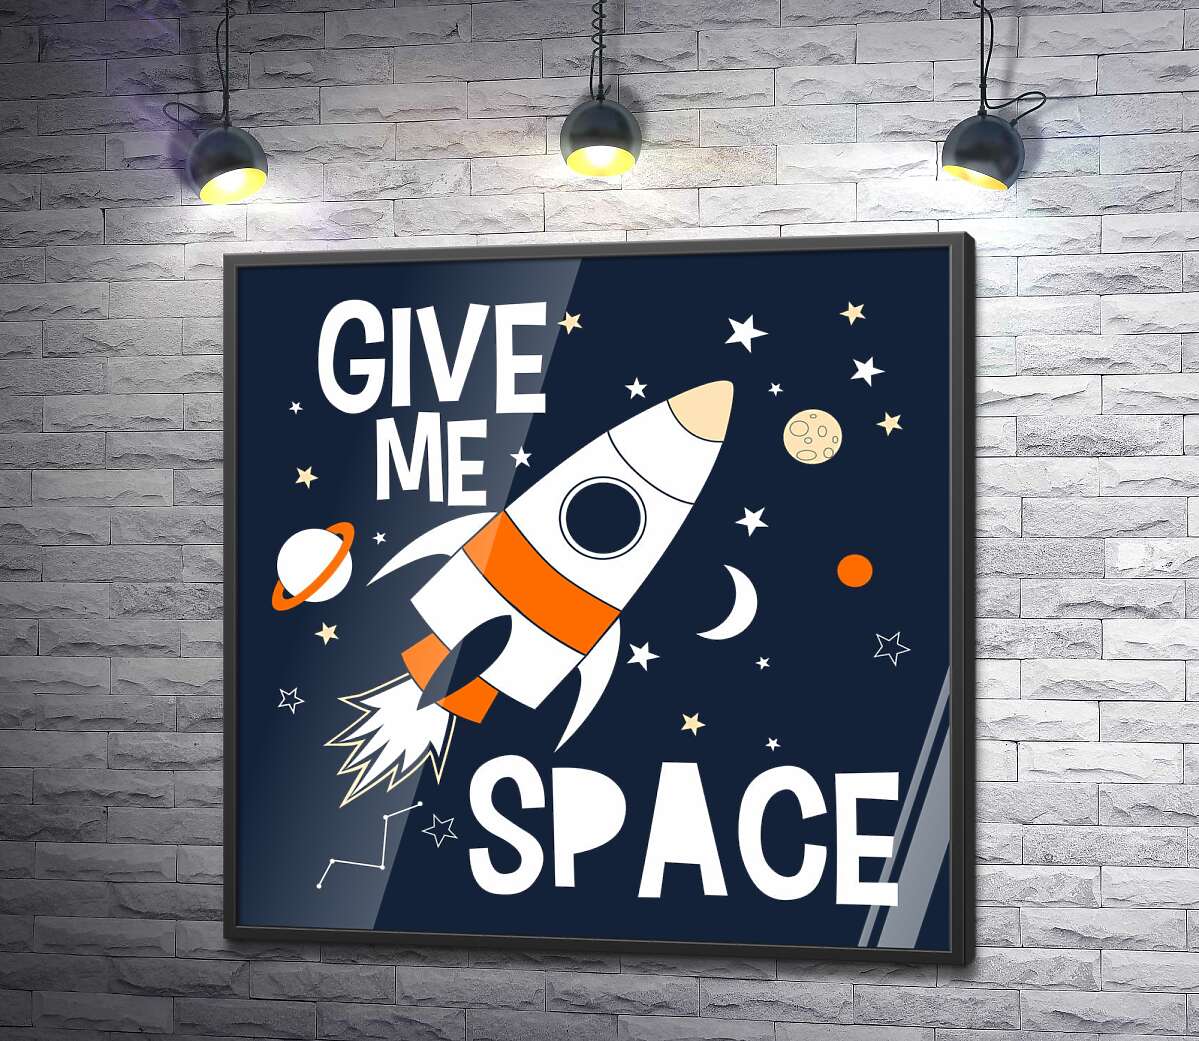 постер Ракета пролетает между словами "give me space"